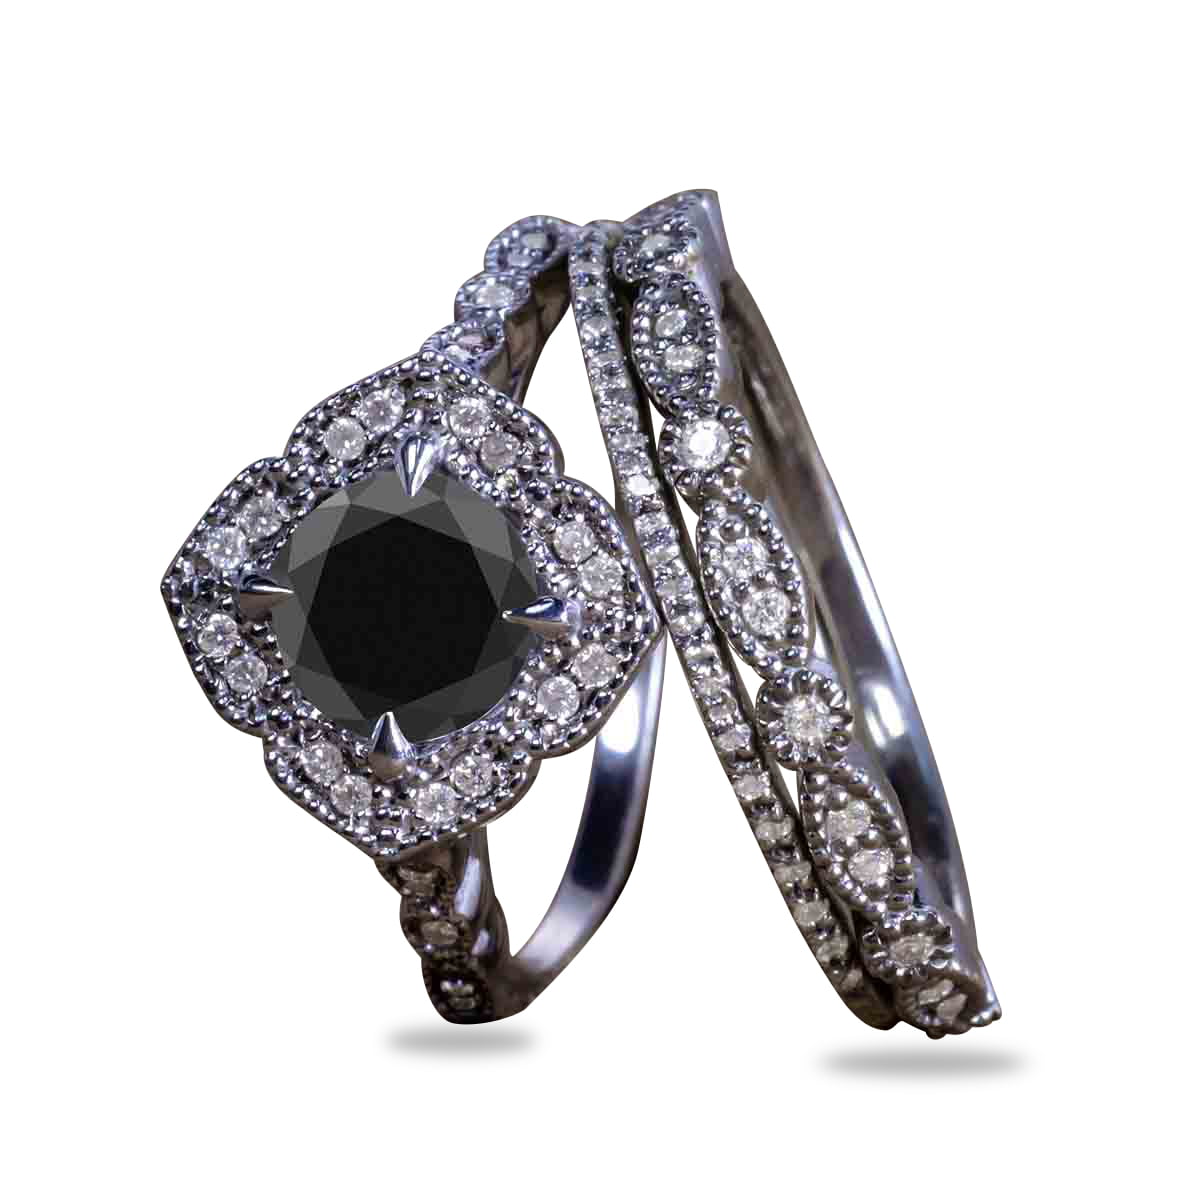 Gothic Wedding Rings Flash Sales, 51% OFF | www.ingeniovirtual.com